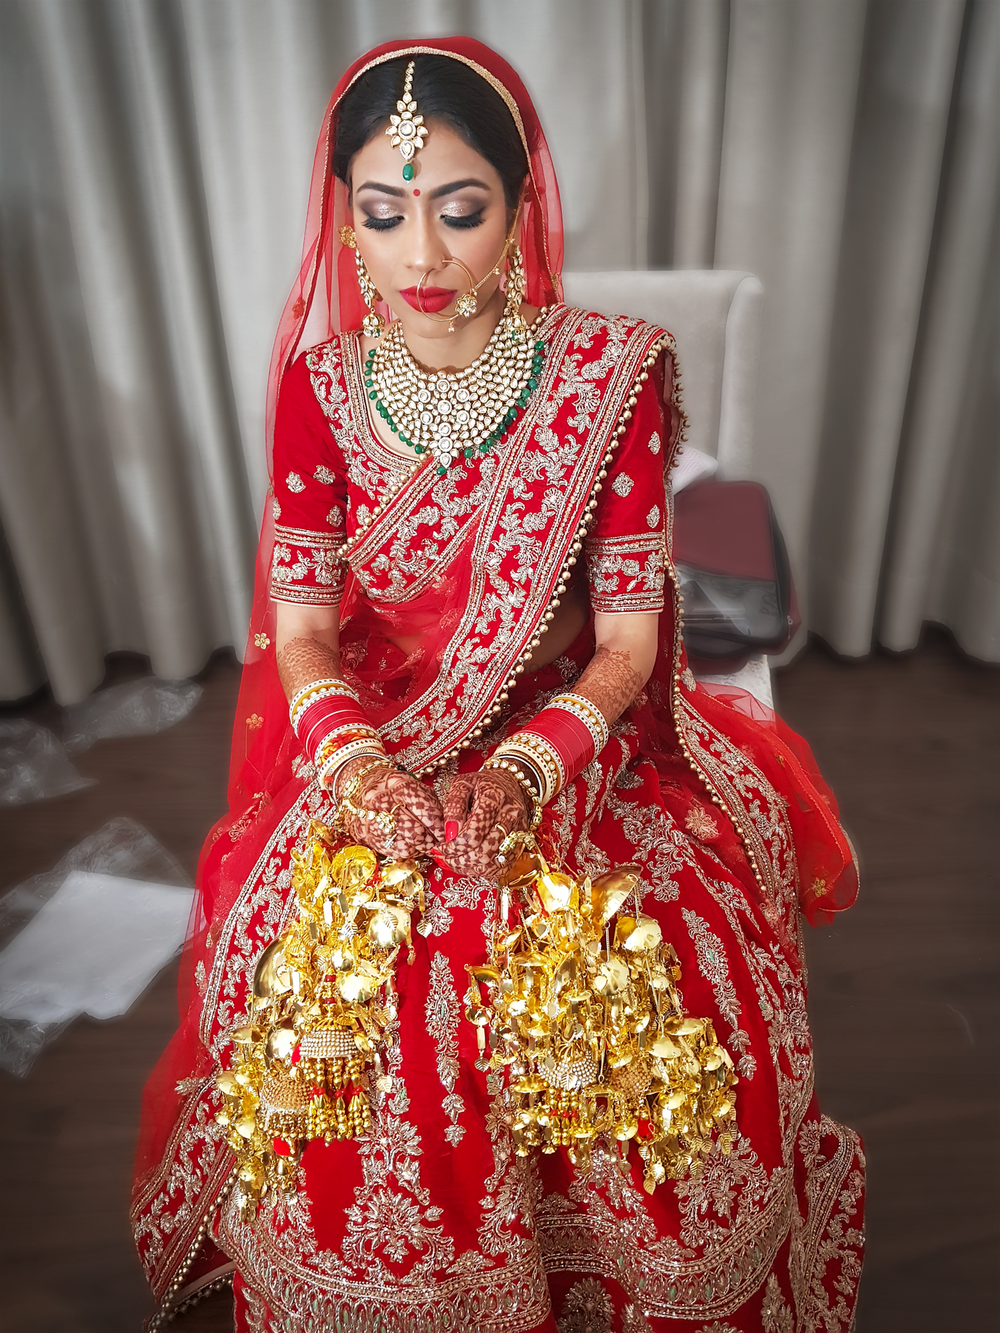 Photo By Ashima Dhir - Bridal Makeup